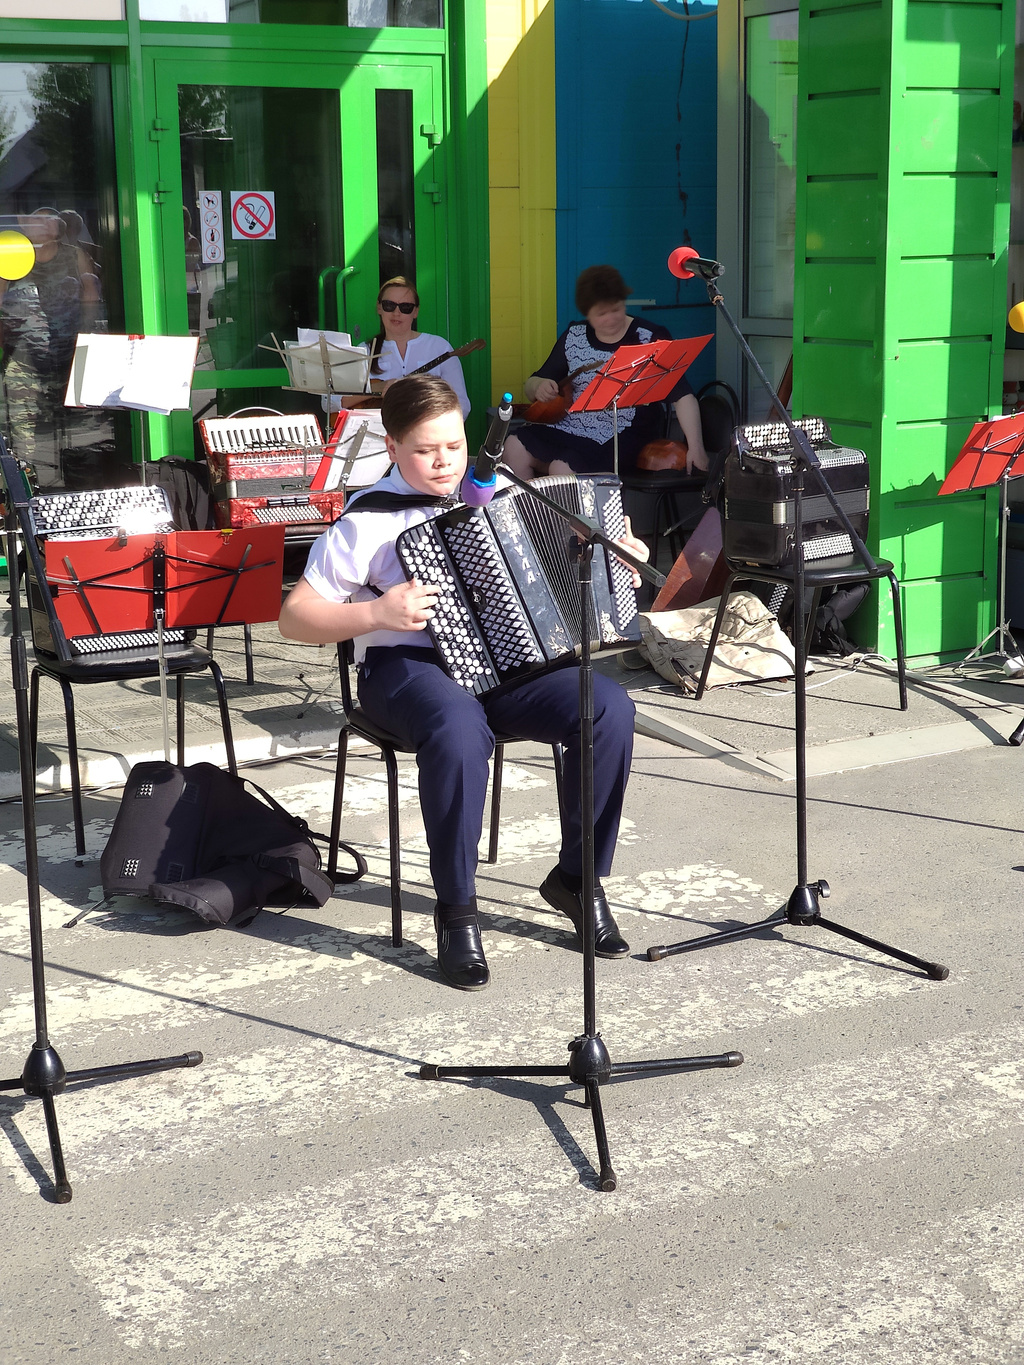 Воспитанники Детской школы искусств выступили с концертом в рамках акции "Лето в городе"